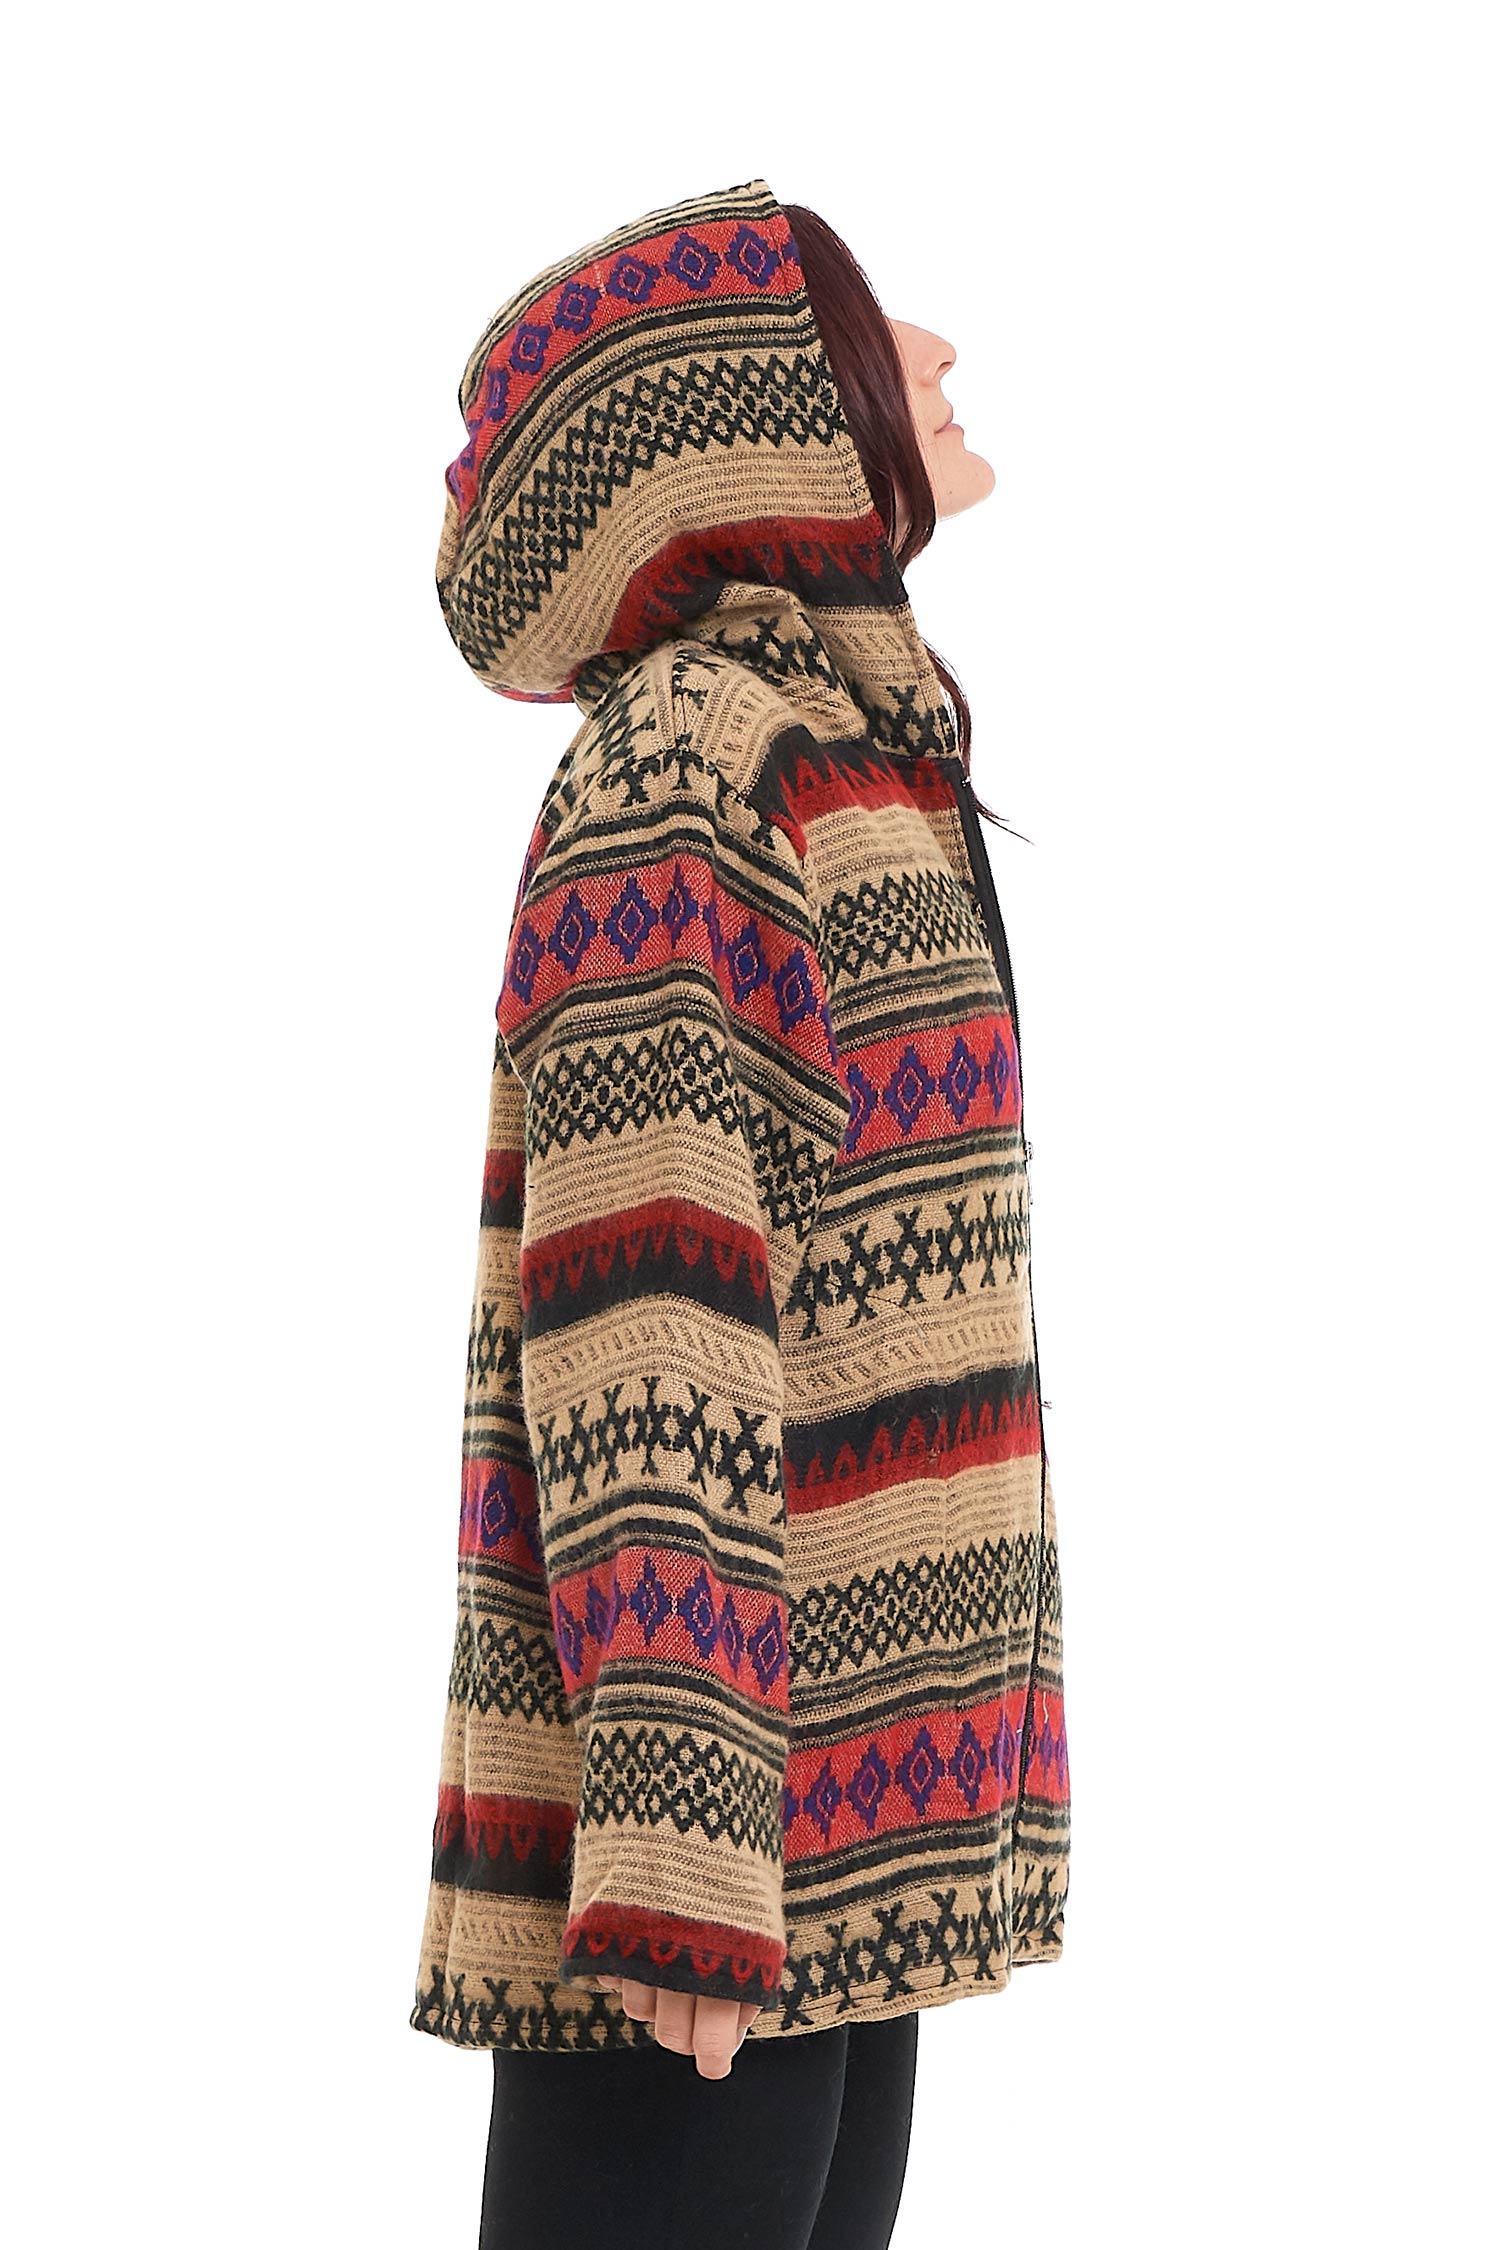 Scandinavian Geometric Woven Hippy Jacket With Hood | Altshop UK